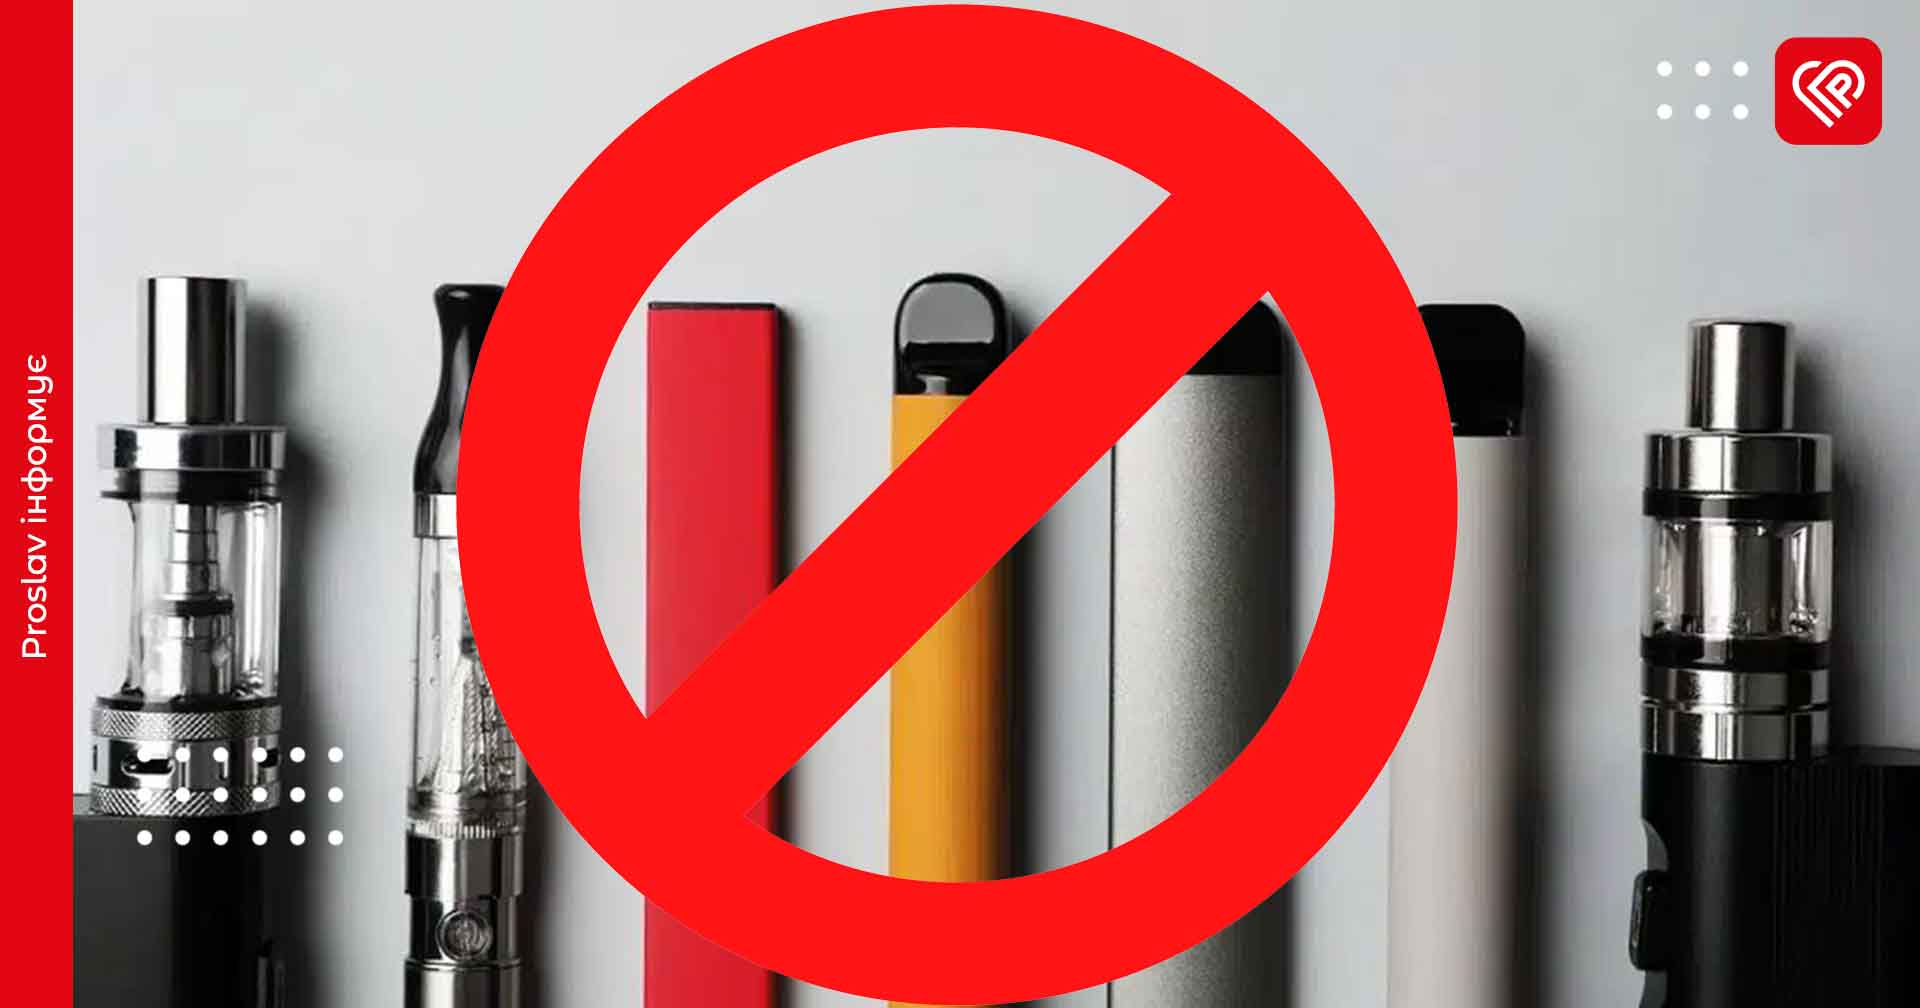 «Одноразок» з ароматизаторами більше не буде прилавках: 11 липня в Україні змінюються регулювання тютюну